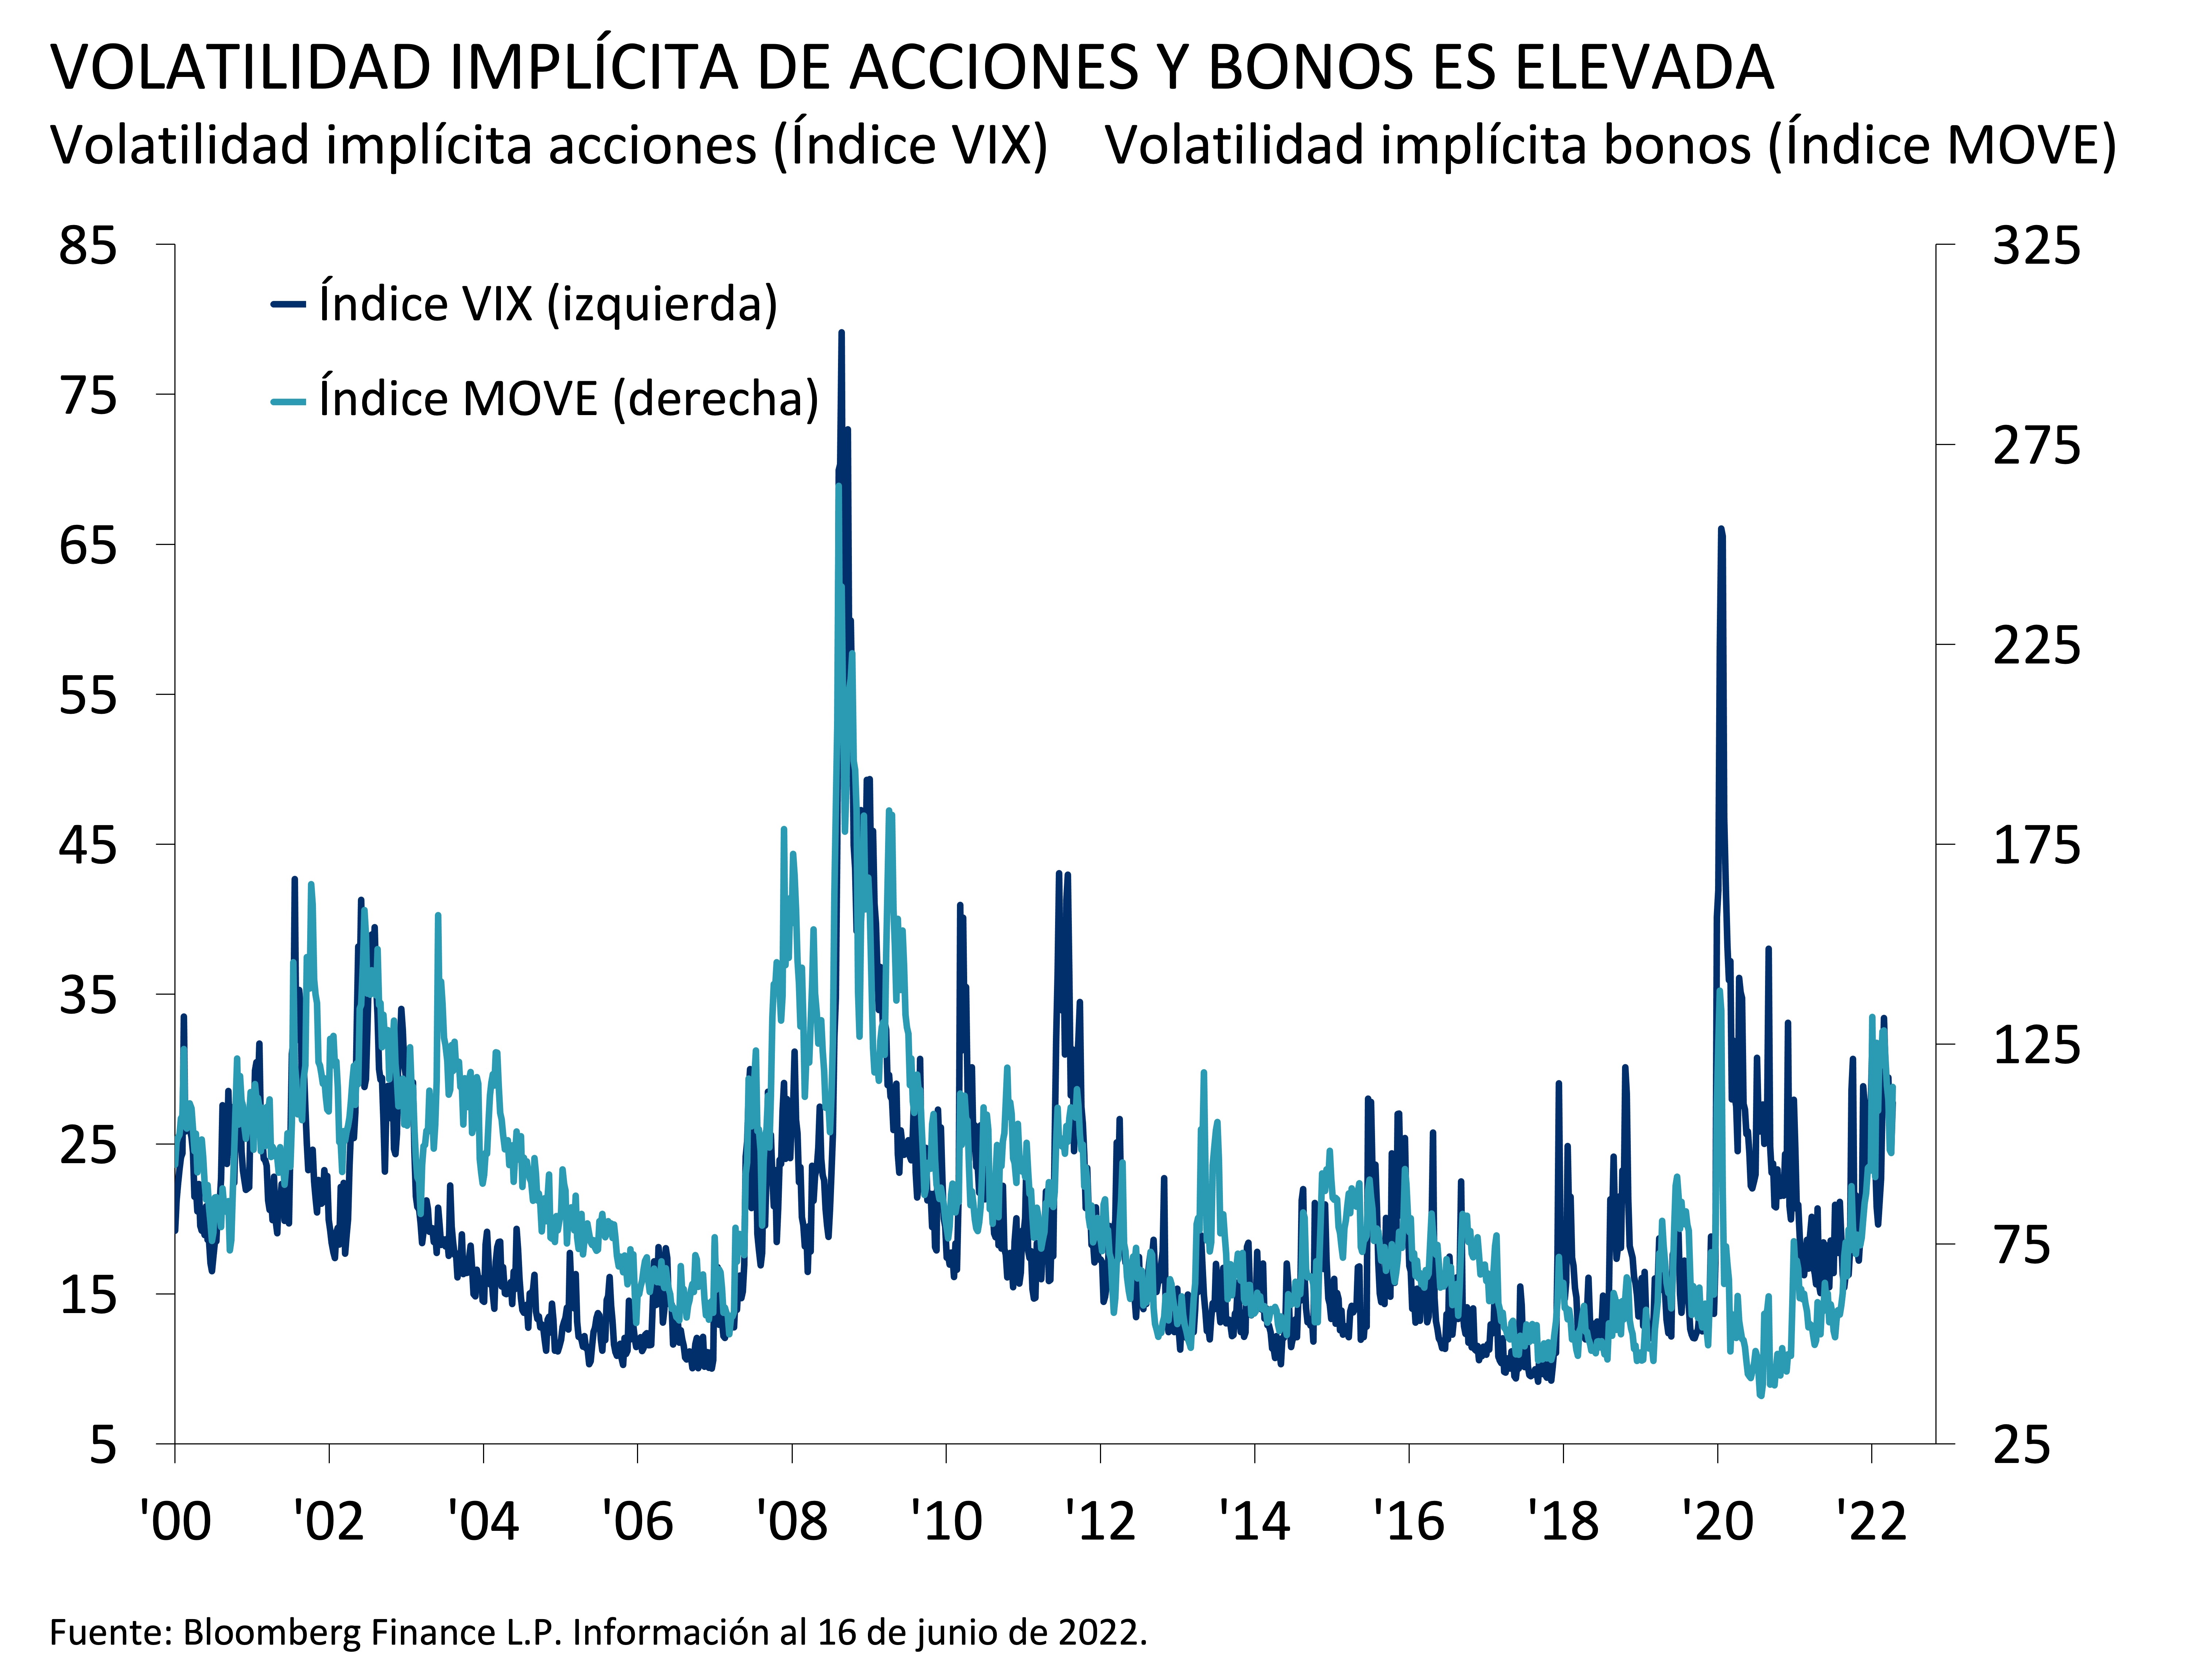 Este gráfico muestra la volatilidad implícita de acciones (índice VIX) y bonos (índice MOVE) entre 2000 y 2022. El VIX comenzó alrededor de 20 y aumentó a 37 en septiembre de 2002. 